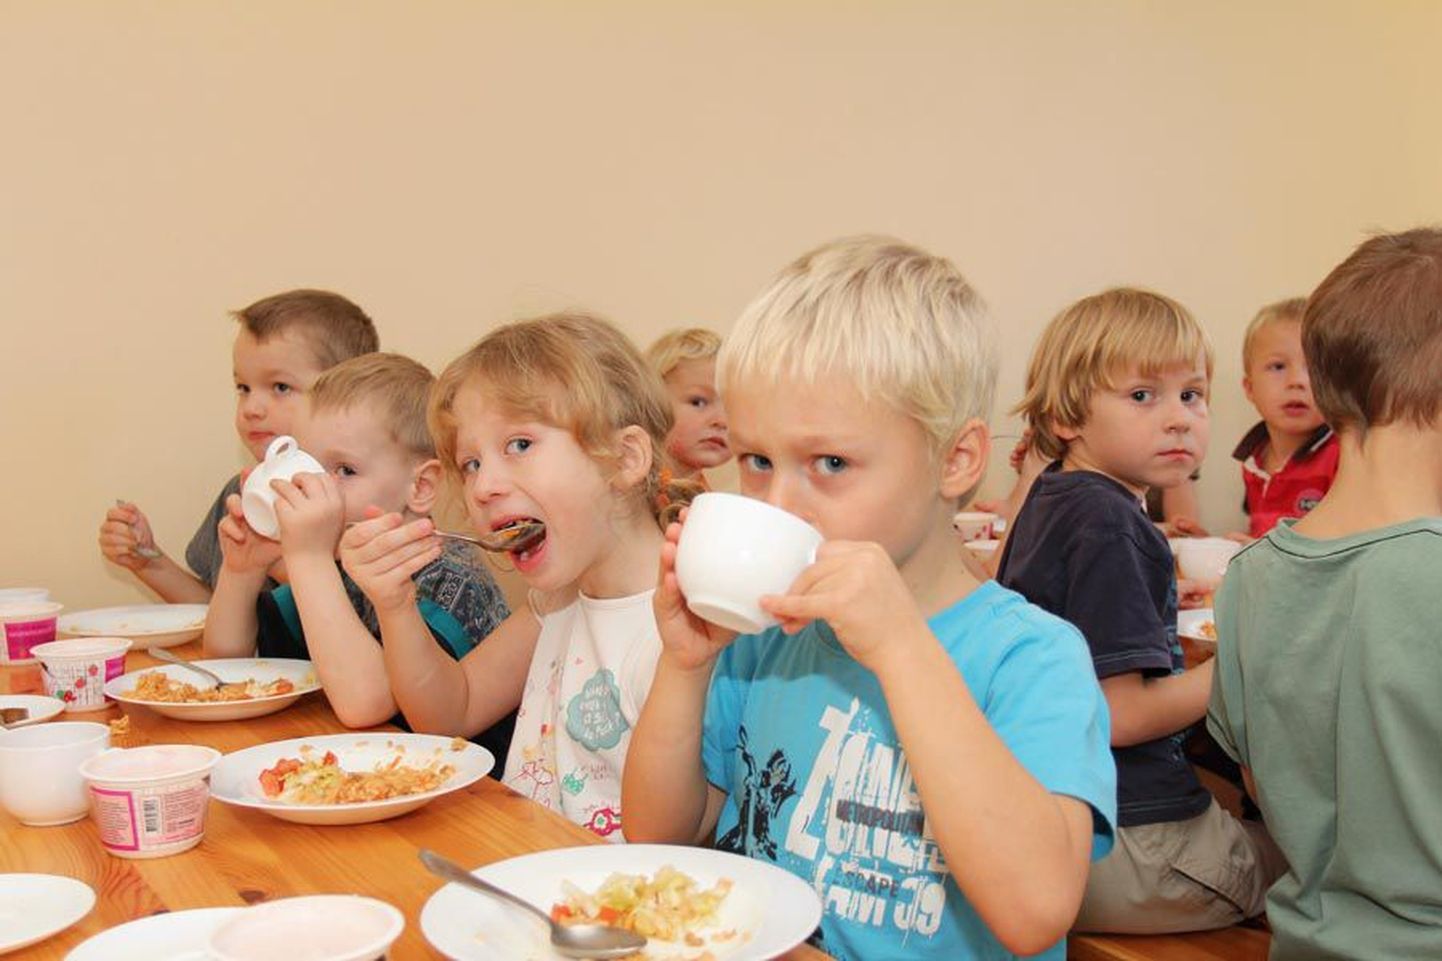 Männimäe tervist edendava lasteaia lapsed leidsid lõunasöögi ajal, et porgandisalat on palju parem kui banaan või õun.